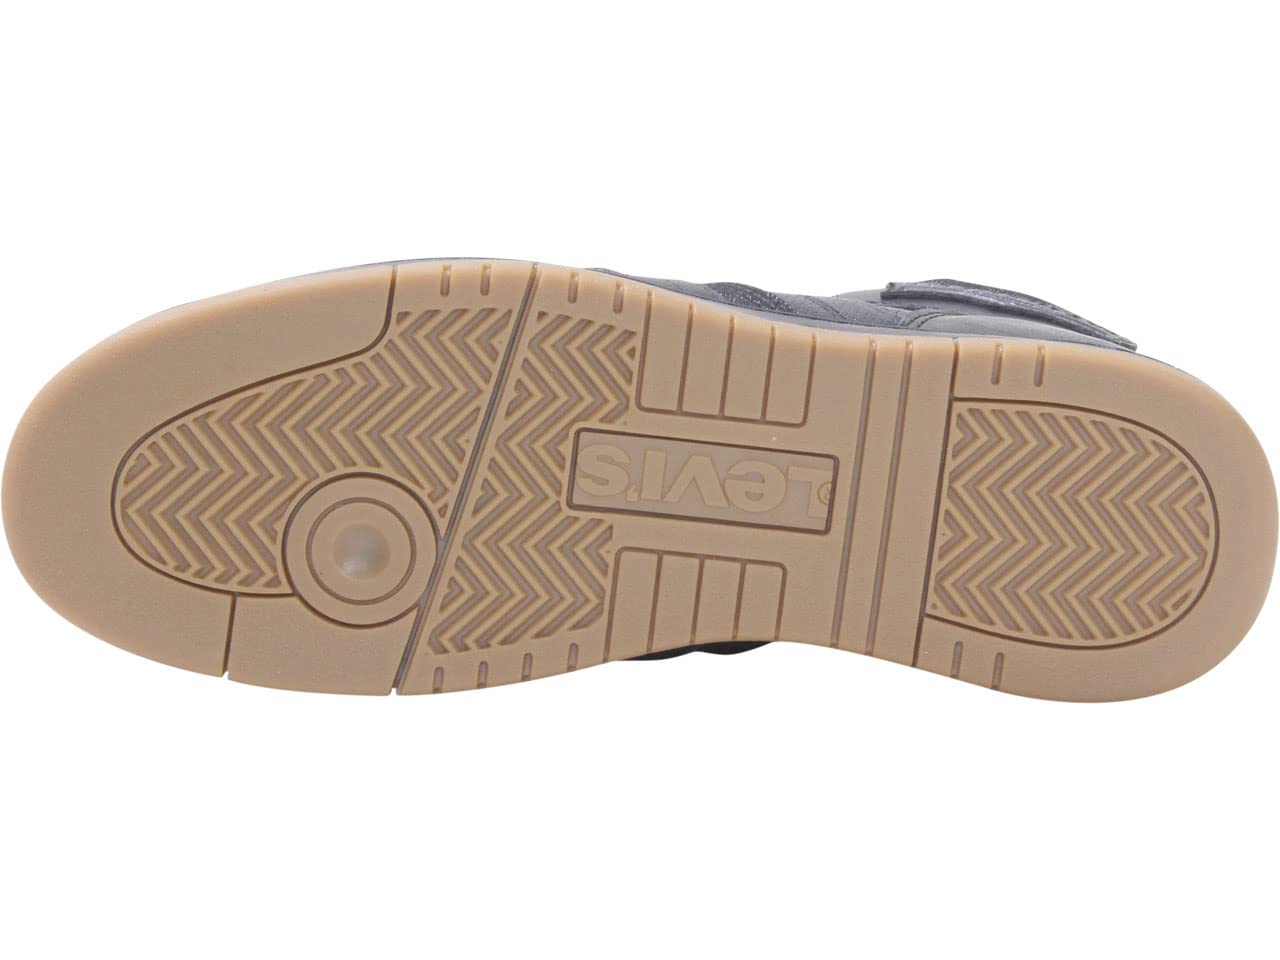 Mua Levi's Mens 520 BB Hi FM Fashion Hightop Sneaker Shoe trên Amazon Mỹ  chính hãng 2023 | Giaonhan247